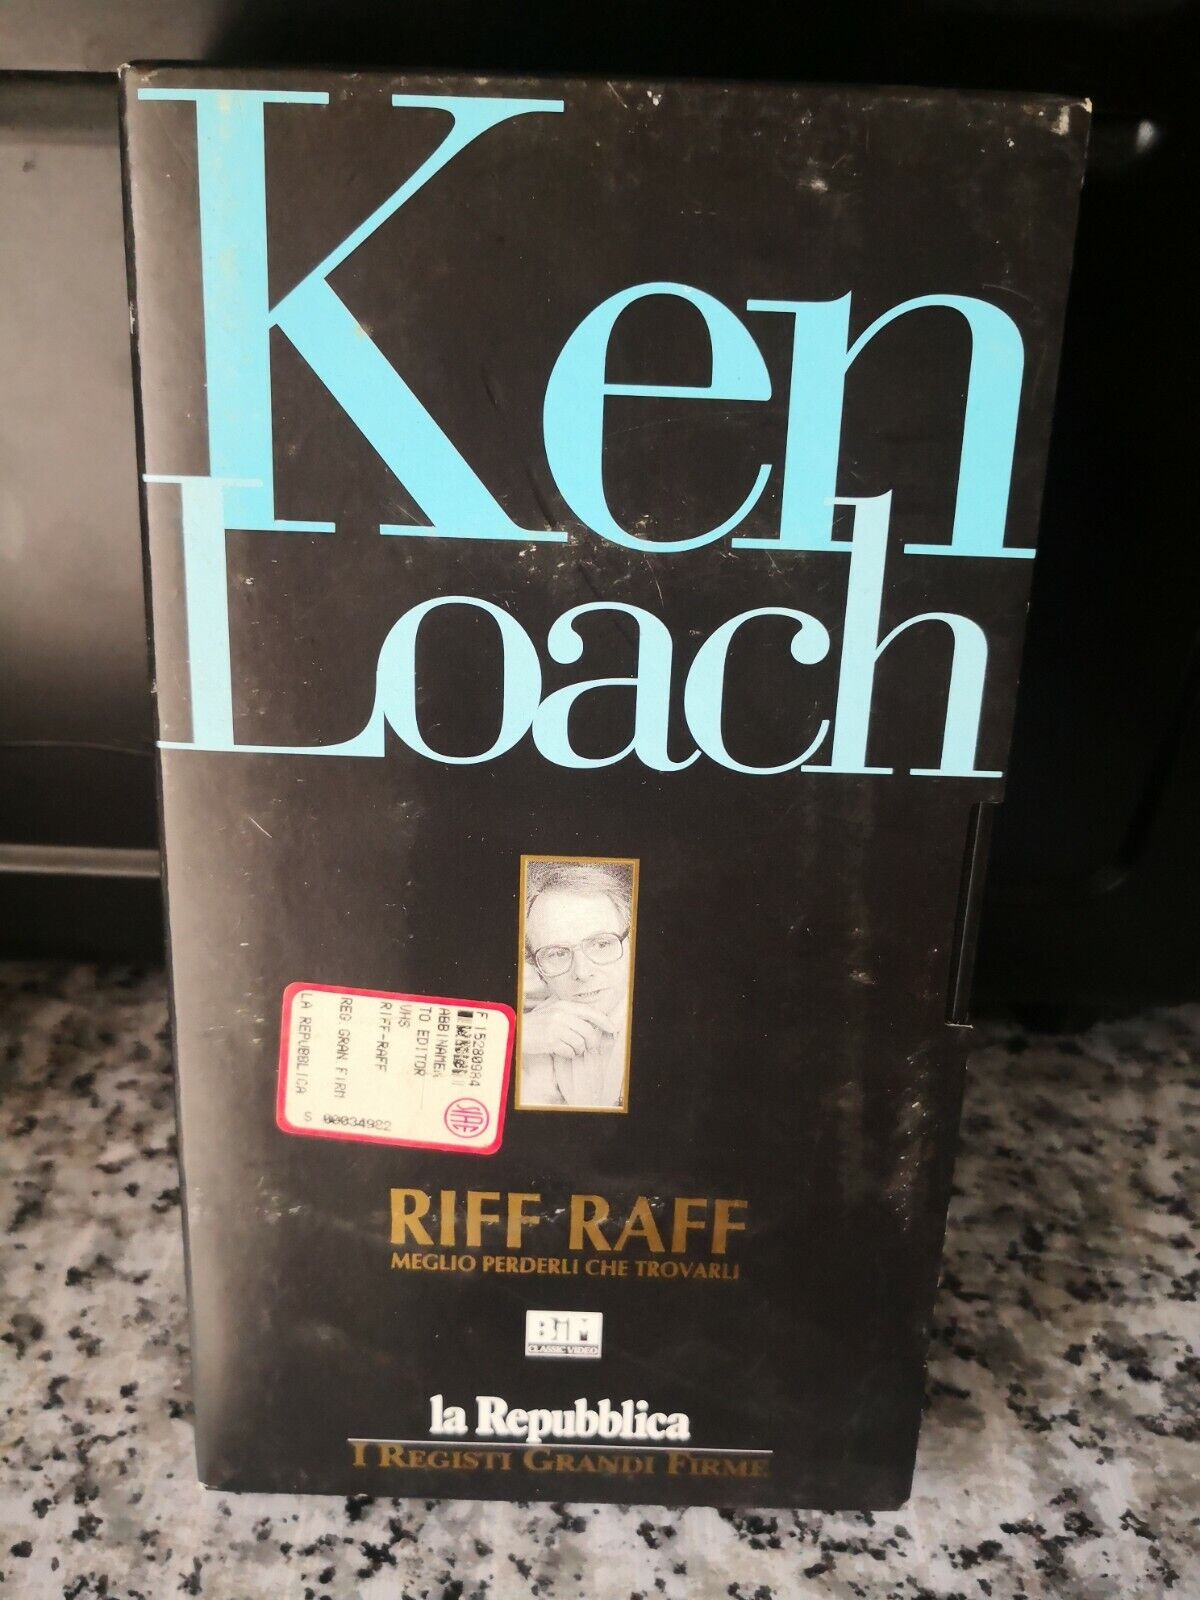 Ken Loach - Riff Raff - vhs - 1991 - La repubblica -F